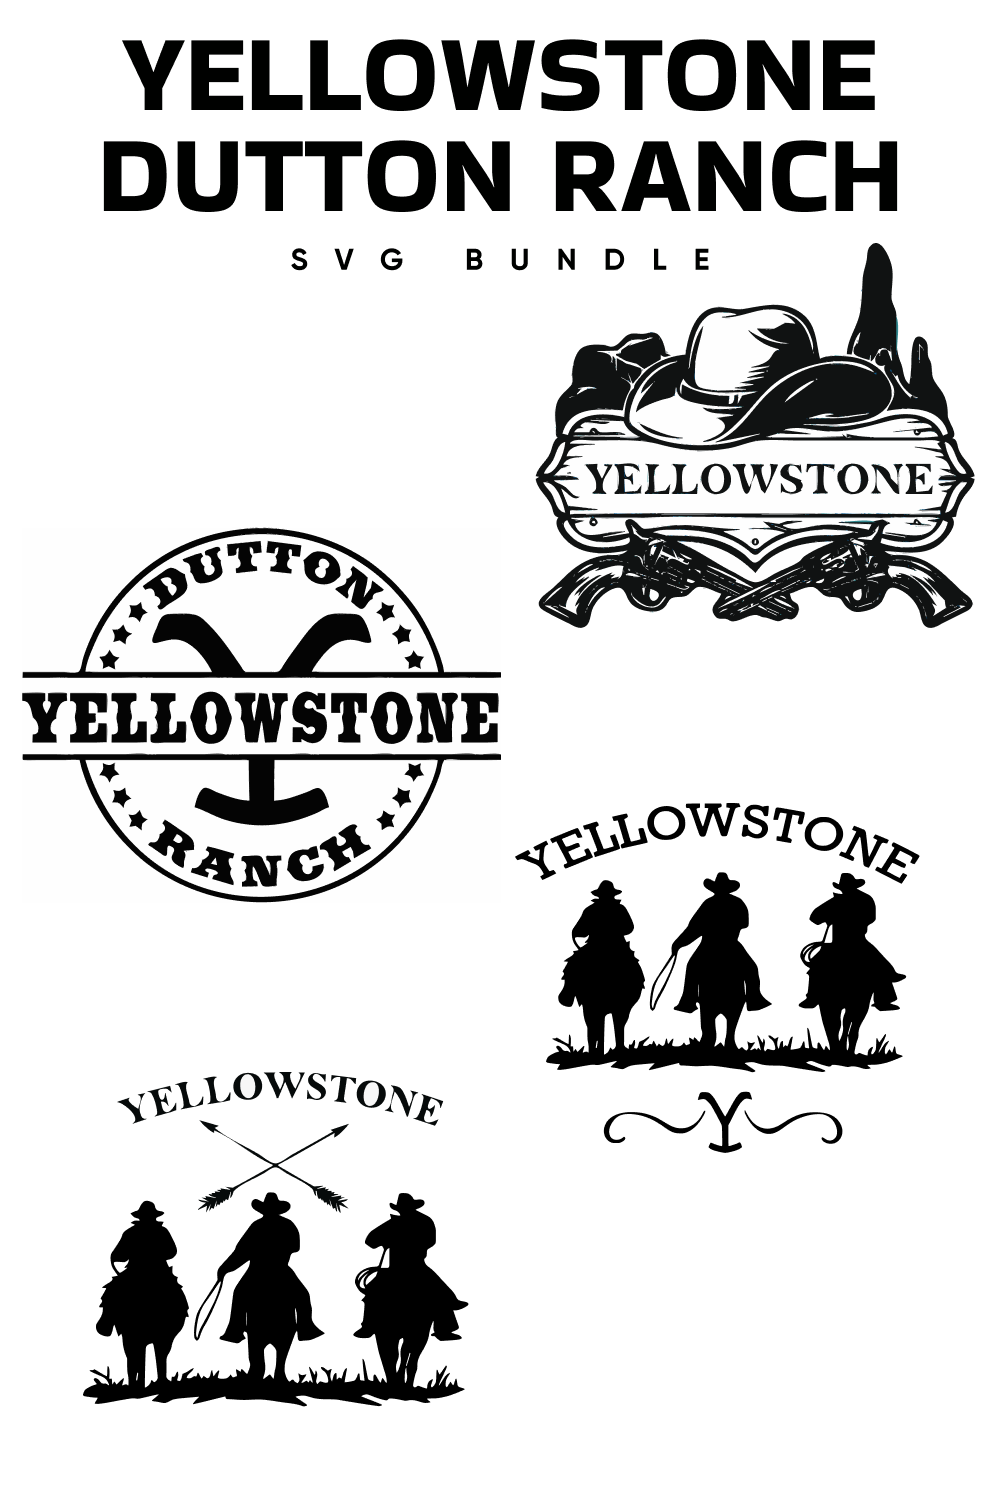 01. yellowstone dutton ranch svg free bundle 1000 x 1500 369